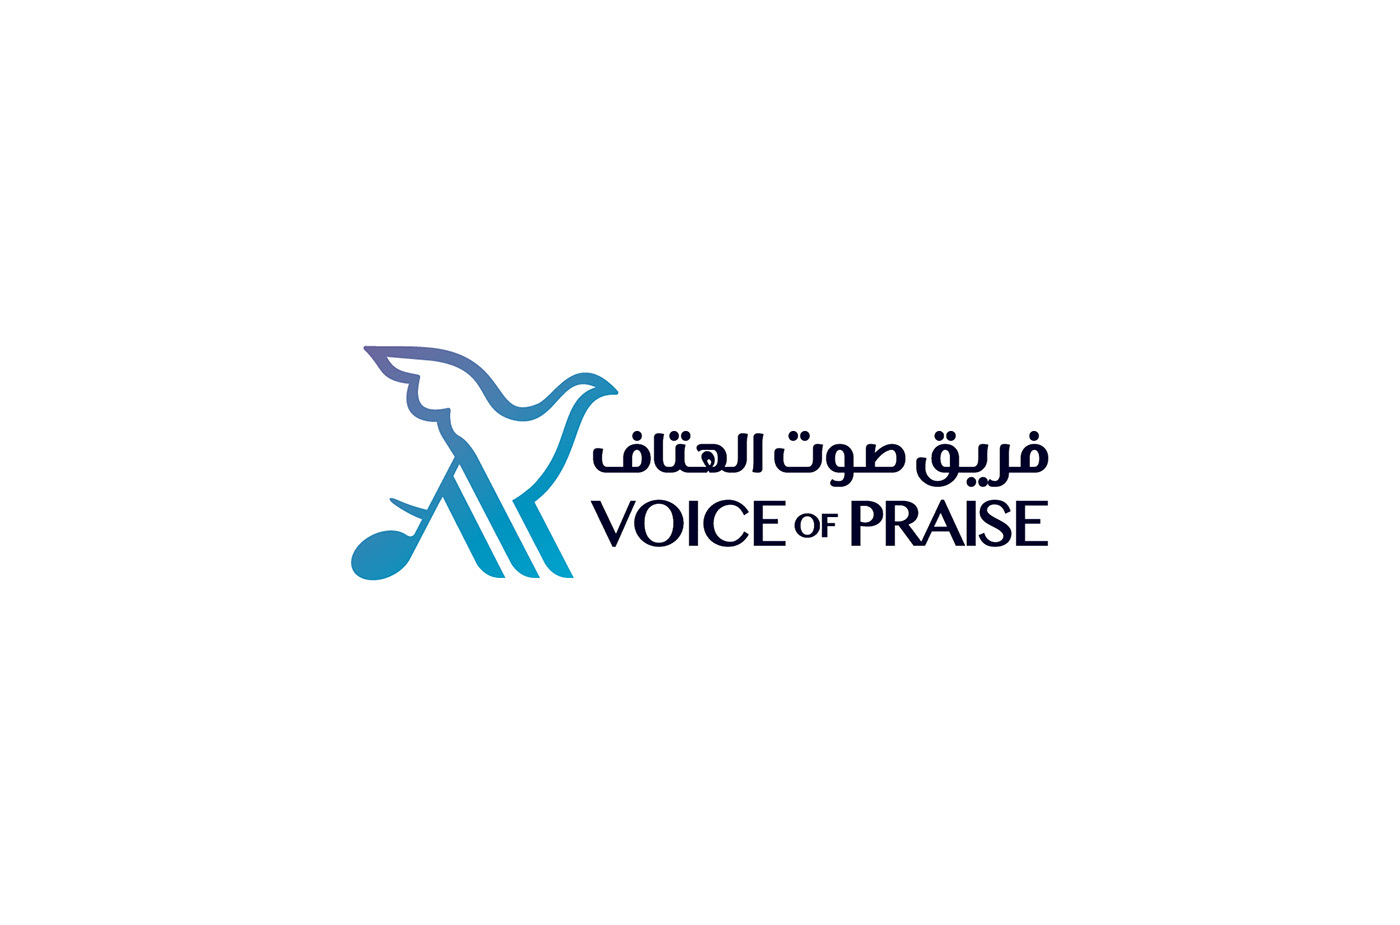 band Christian holy jordan logo MENA music voiceofpraise VOP worship